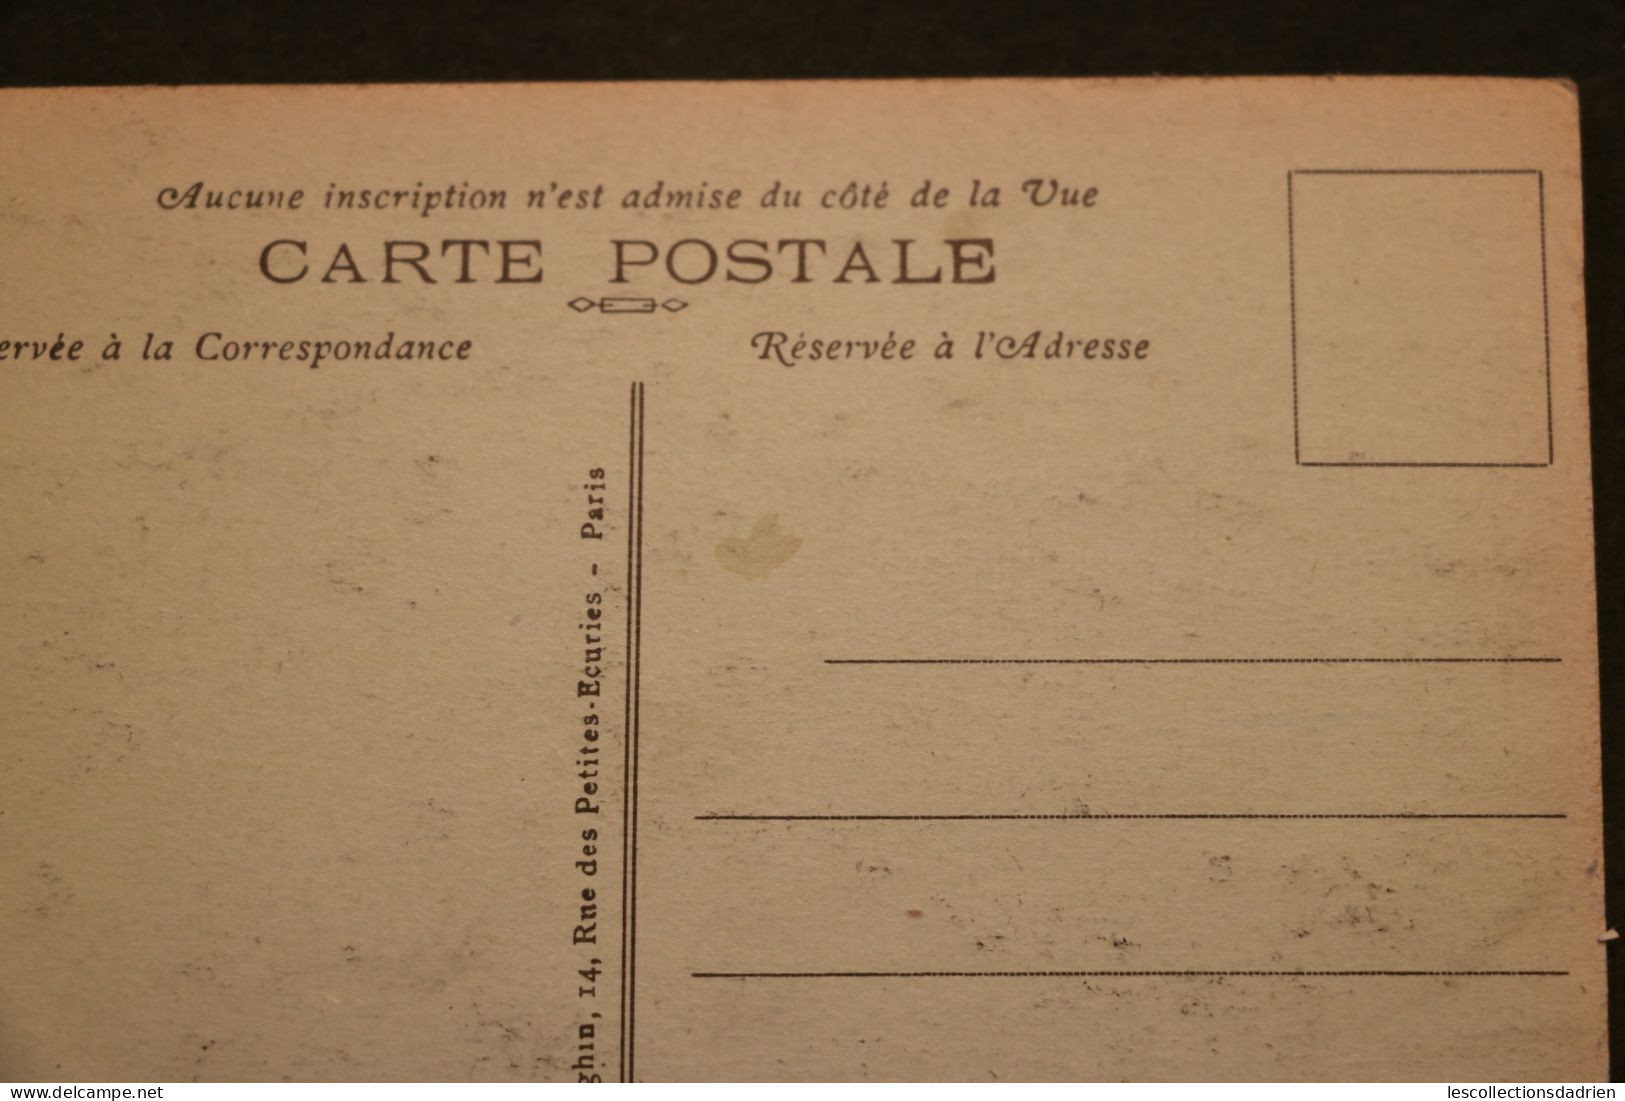 Carte postale ancienne - Paris -  le musé de Cluny - museum